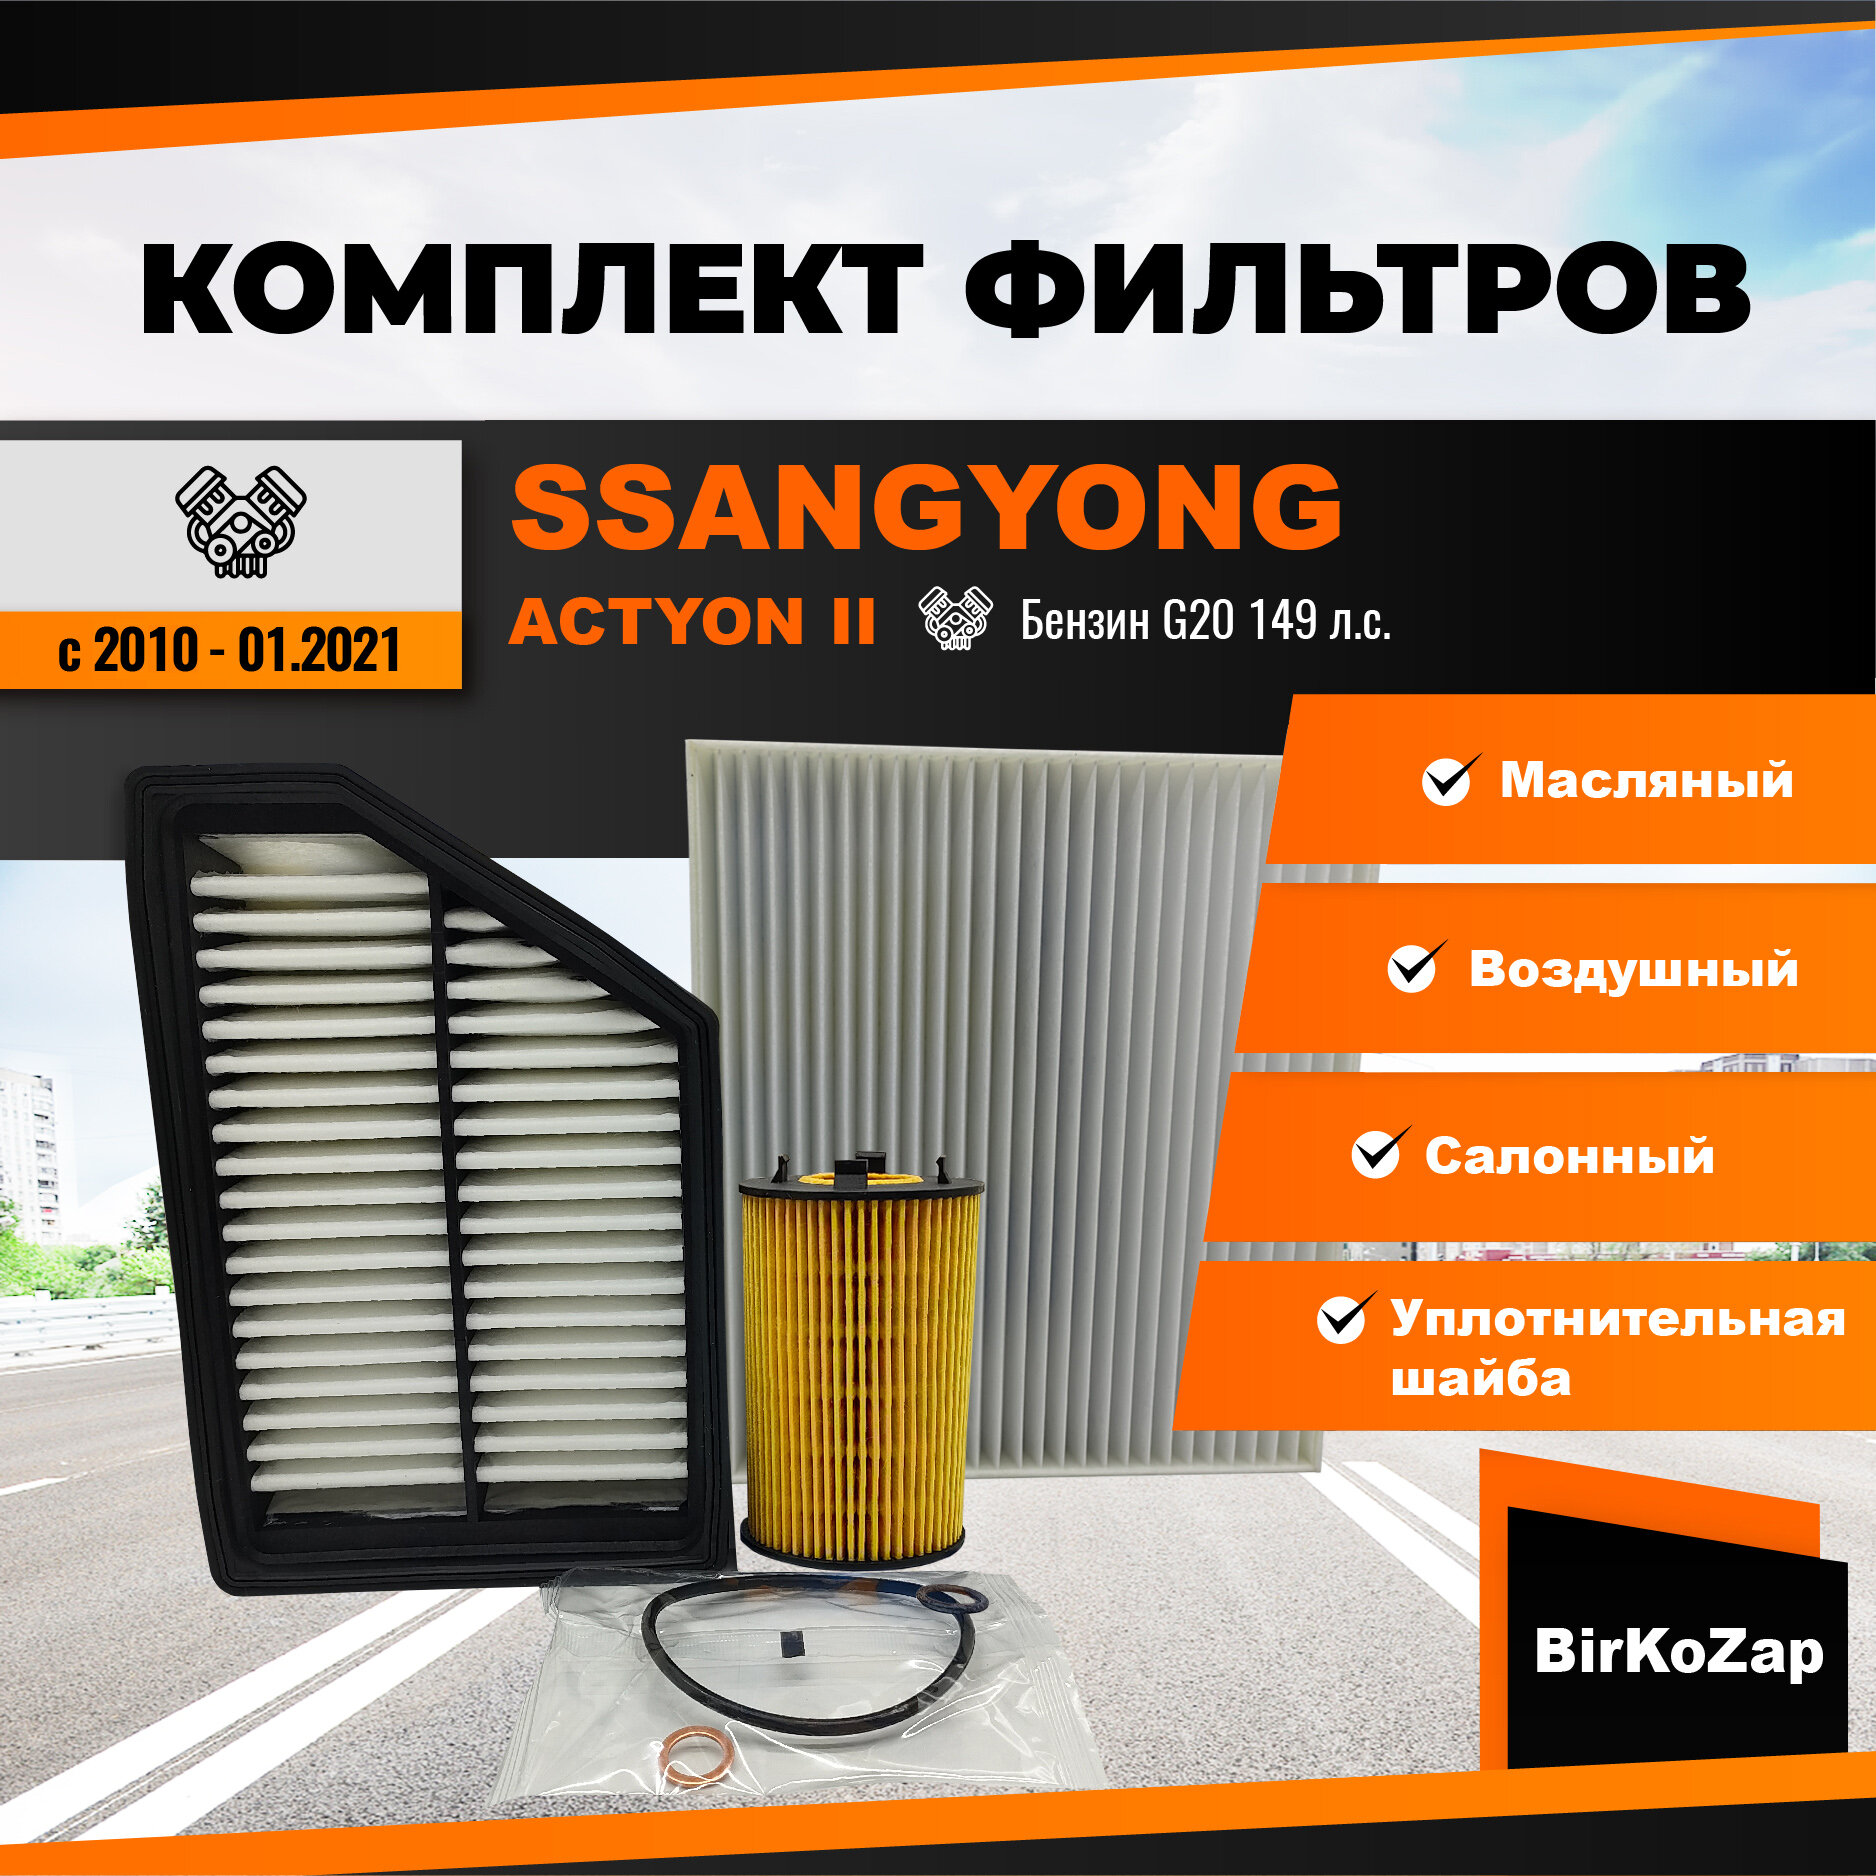 Комплект фильтров SsangYong Actyon II поколения 2010 - 01.2021, бензин G20(фильтр масляный+ воздушный+ салонный +прокладка сливной пробки)